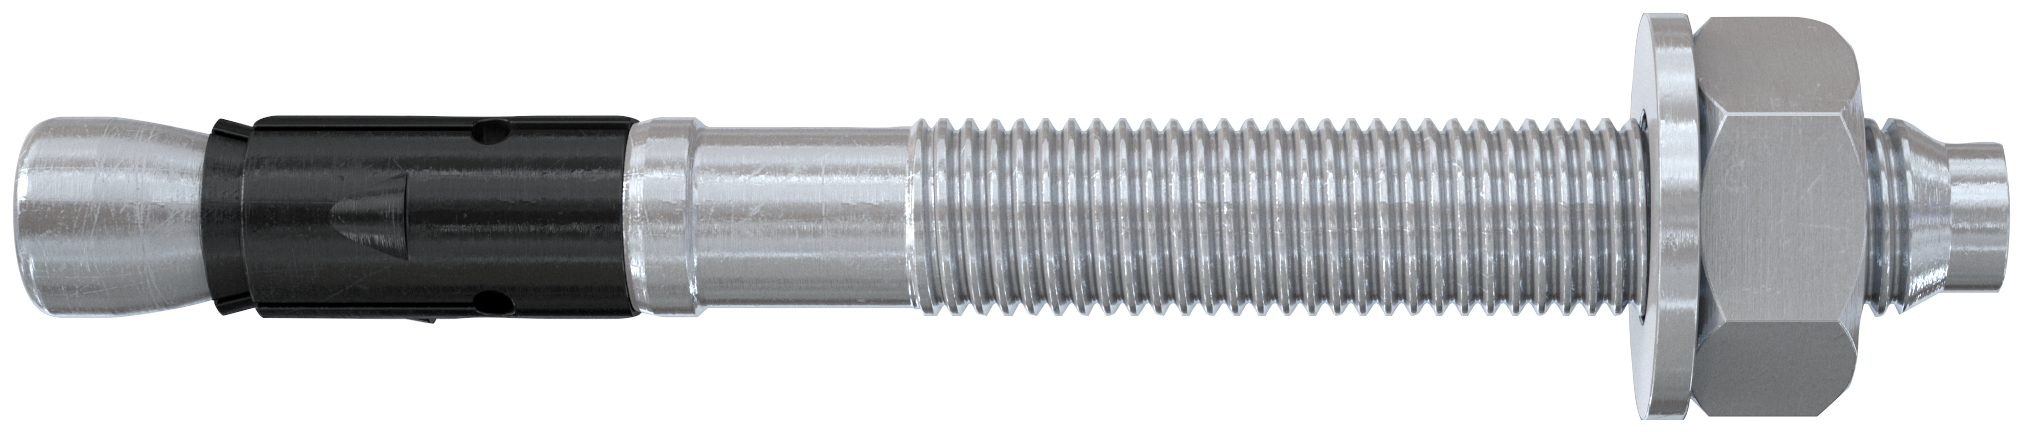 fischer Tassello acciaio FAZ II 10-100 (20 Pz.) L'ancorante ad espansione ad alte prestazioni per carichi statici su calcestruzzo fessurato e per applicazioni sismiche. Versione in acciaio zincato. fie1118